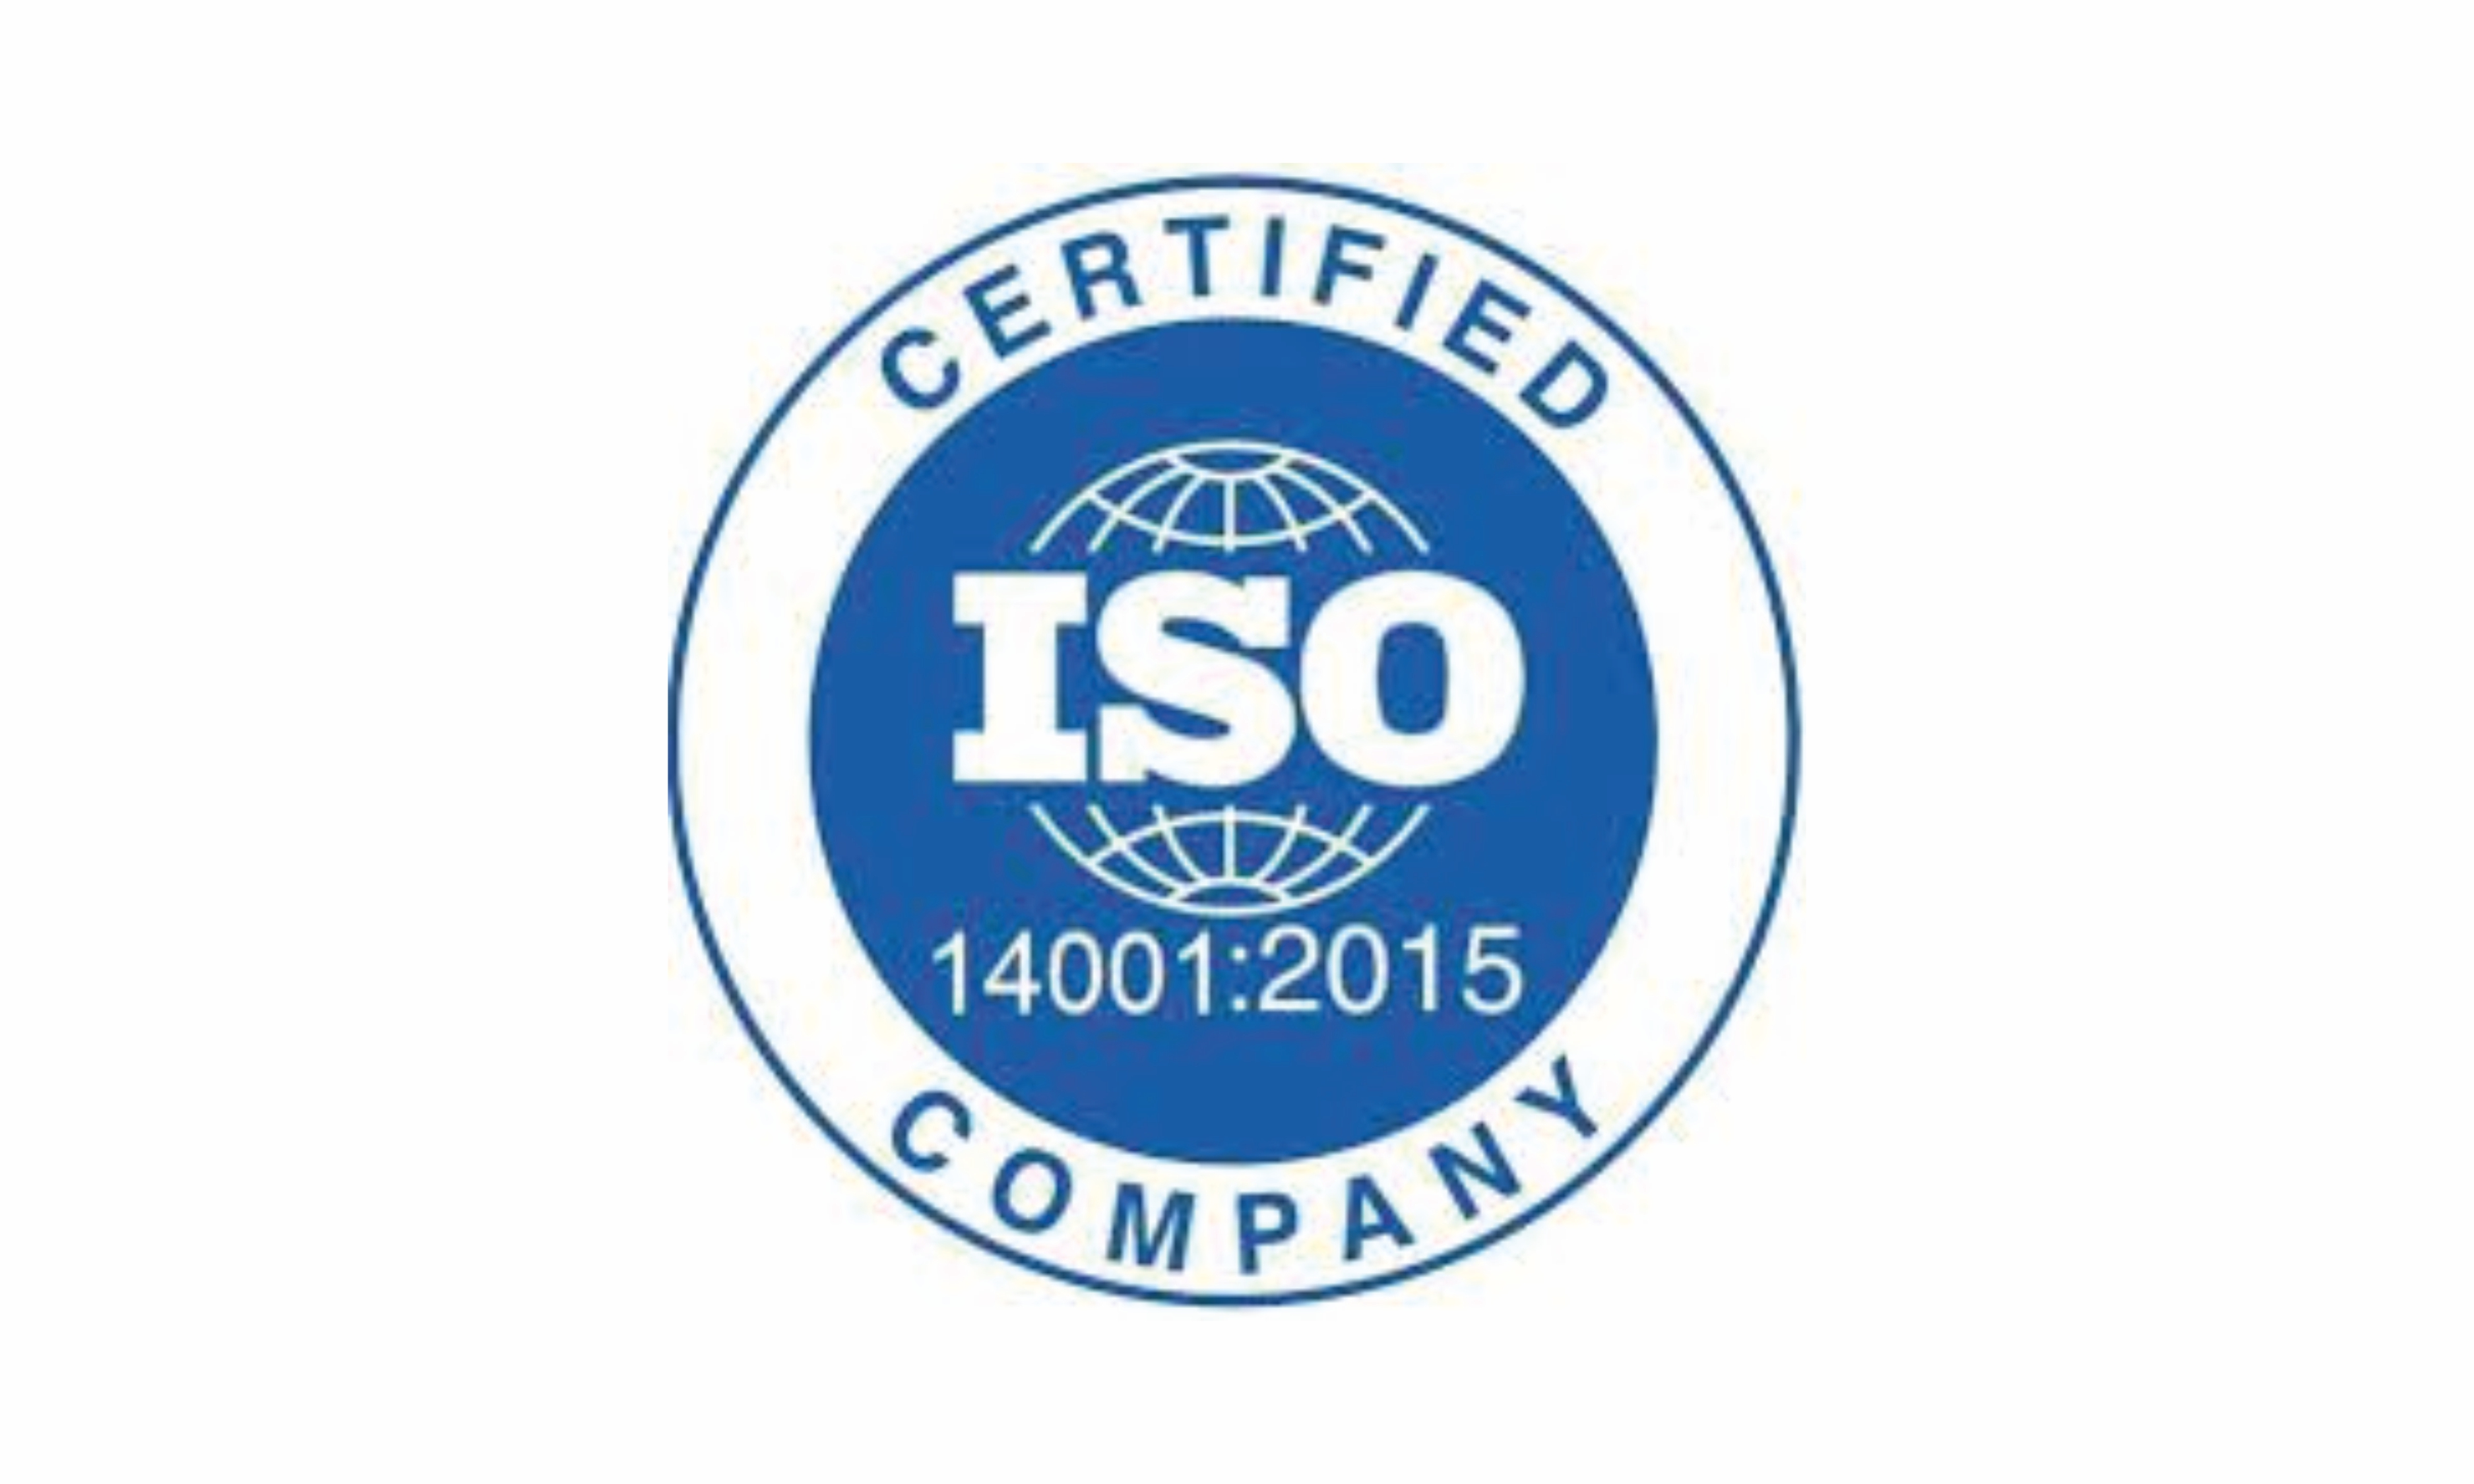  Tiêu chuẩn ISO 14001:2015 là gì?